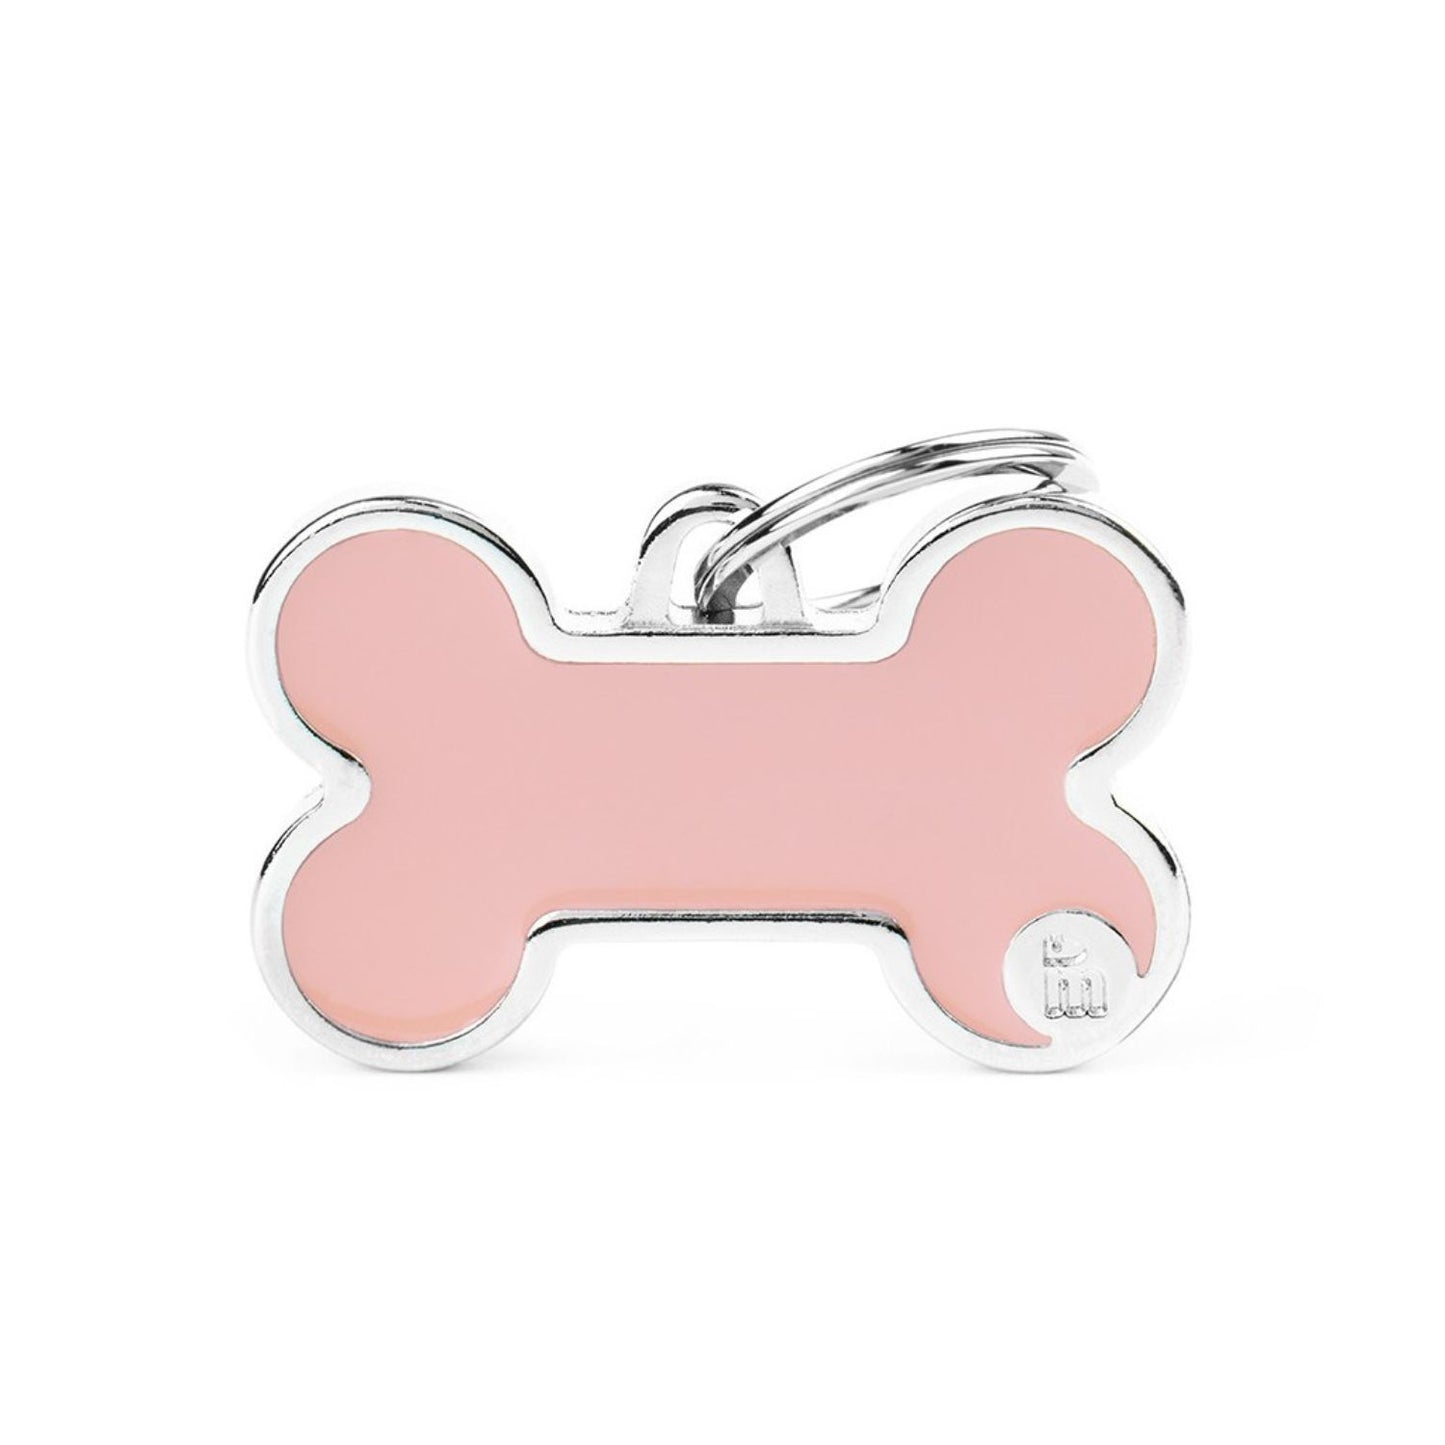 Pet ID Tag | Basic Handmade Pastel Pink Bone + FREE Engraving